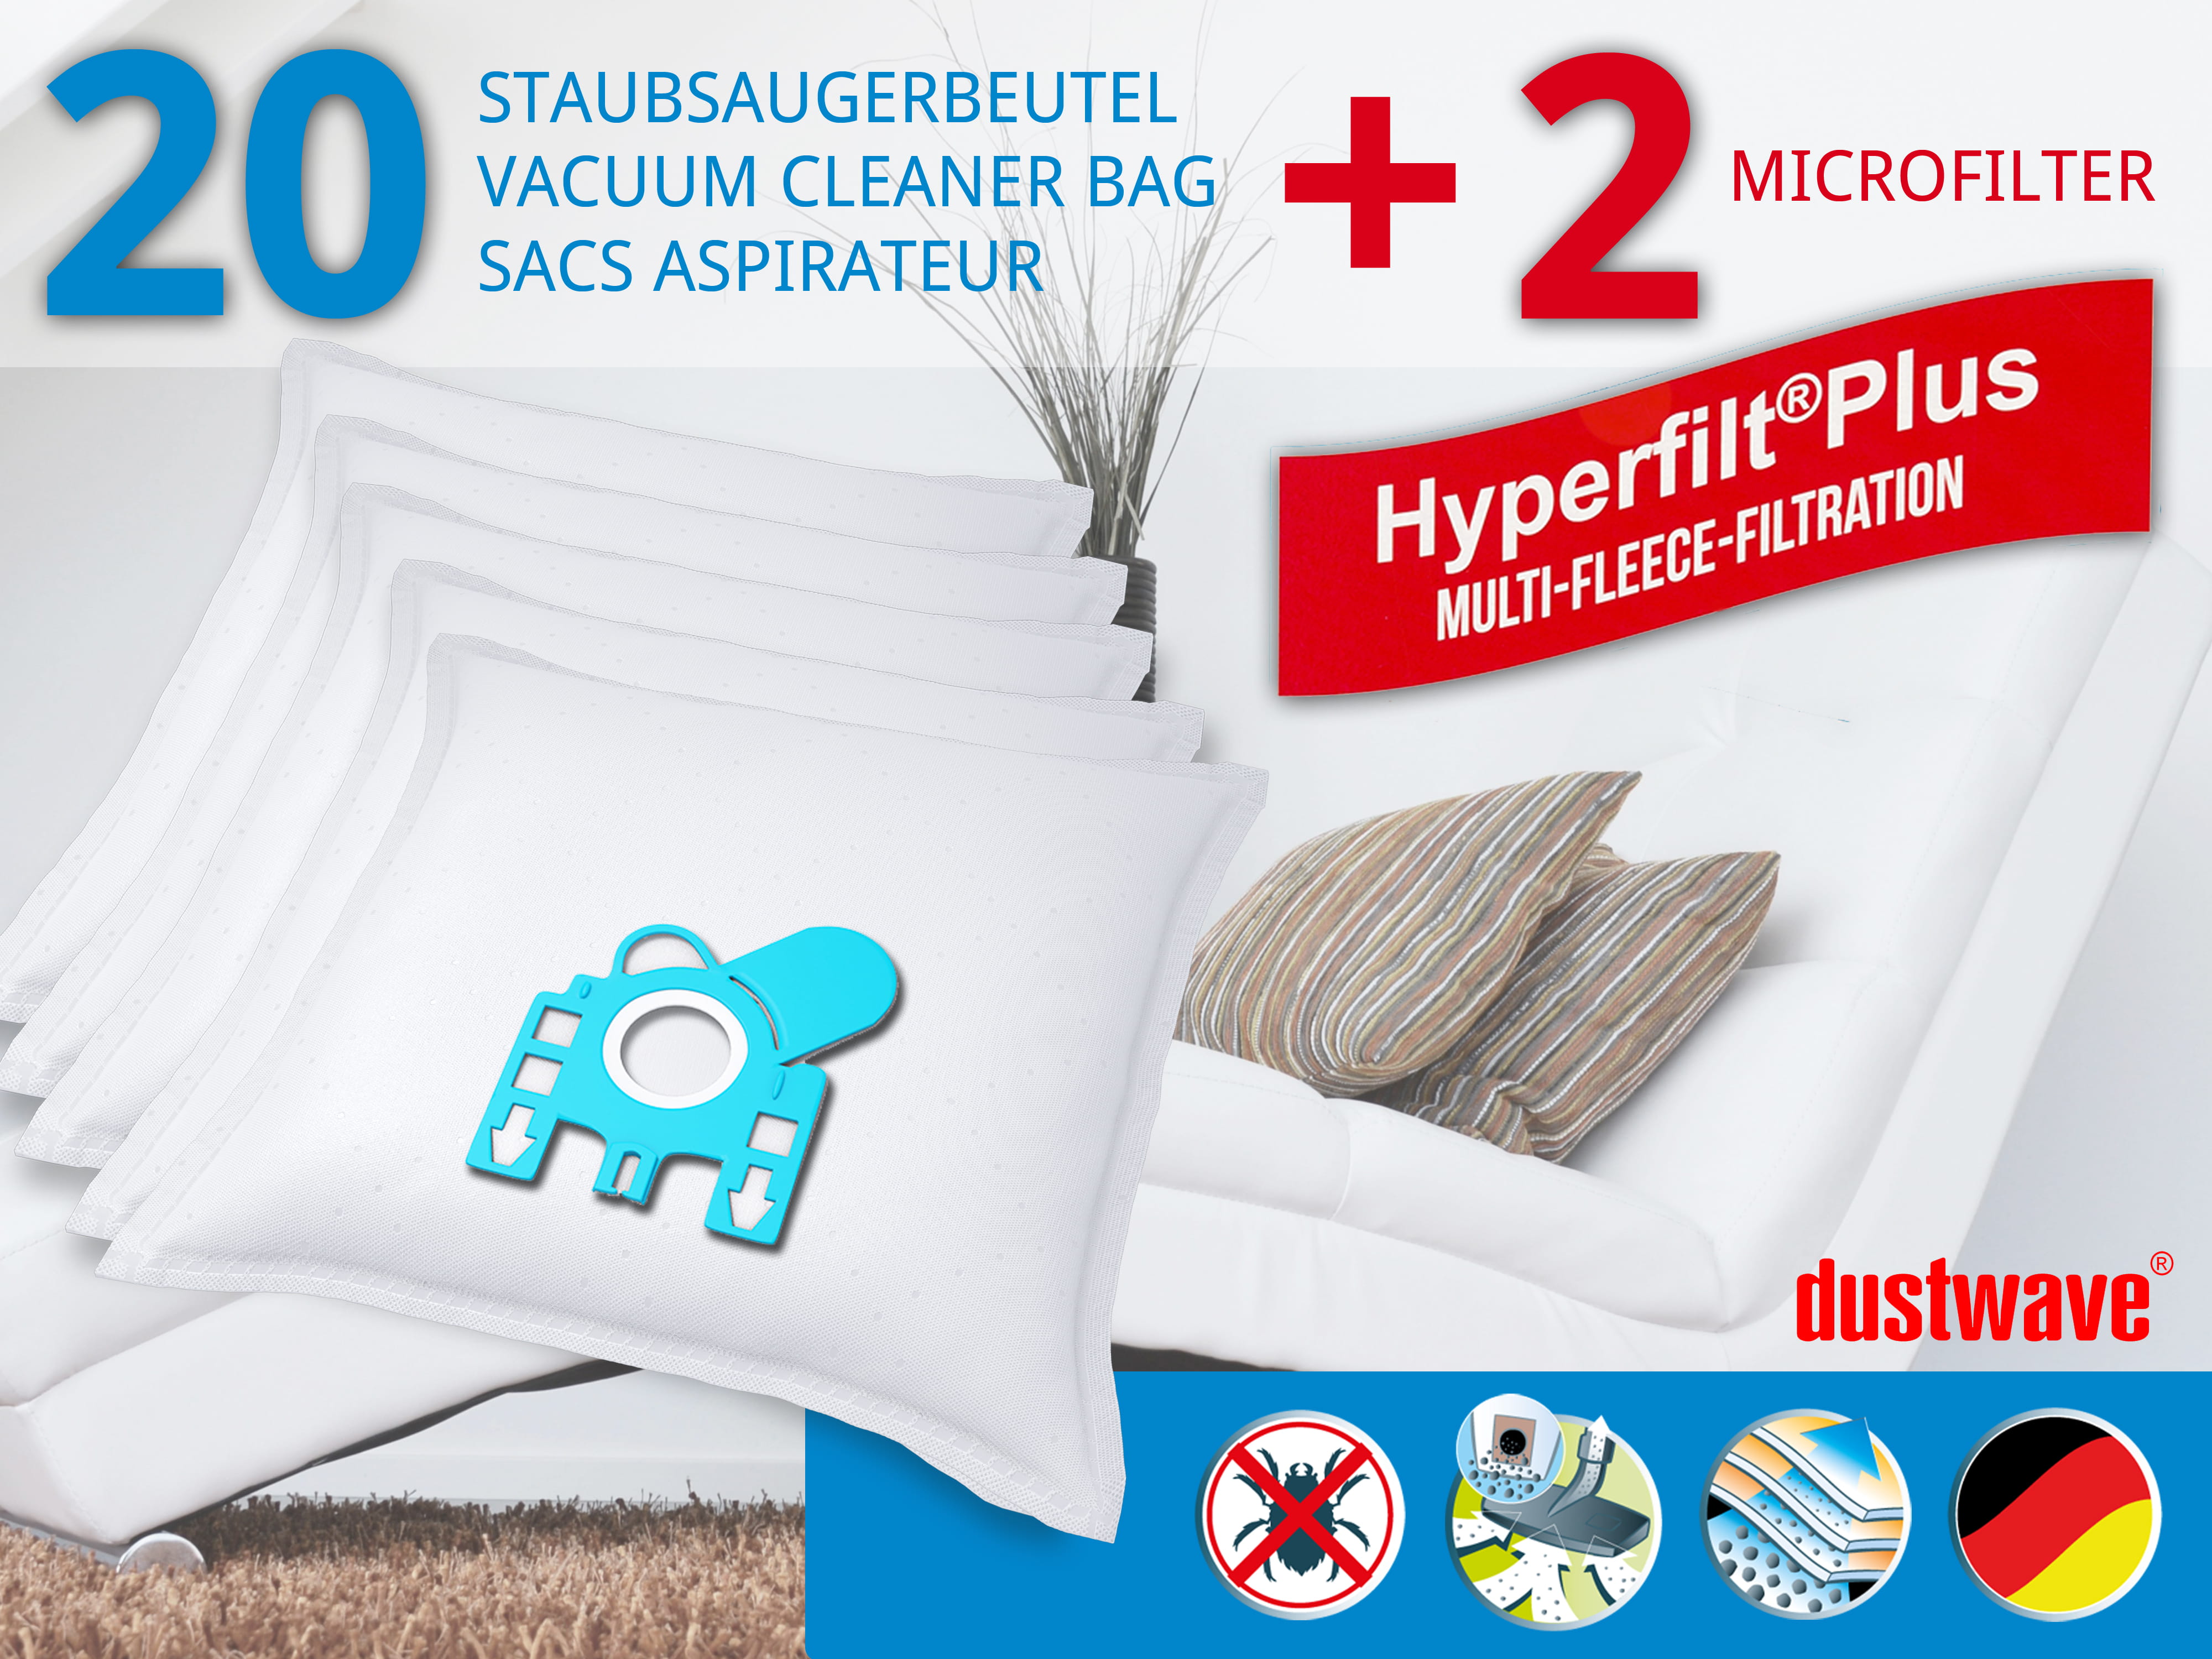 Dustwave® 20 Staubsaugerbeutel für Hoover TD4267 / TRTD4267 - hocheffizient, mehrlagiges Mikrovlies mit Hygieneverschluss - Made in Germany